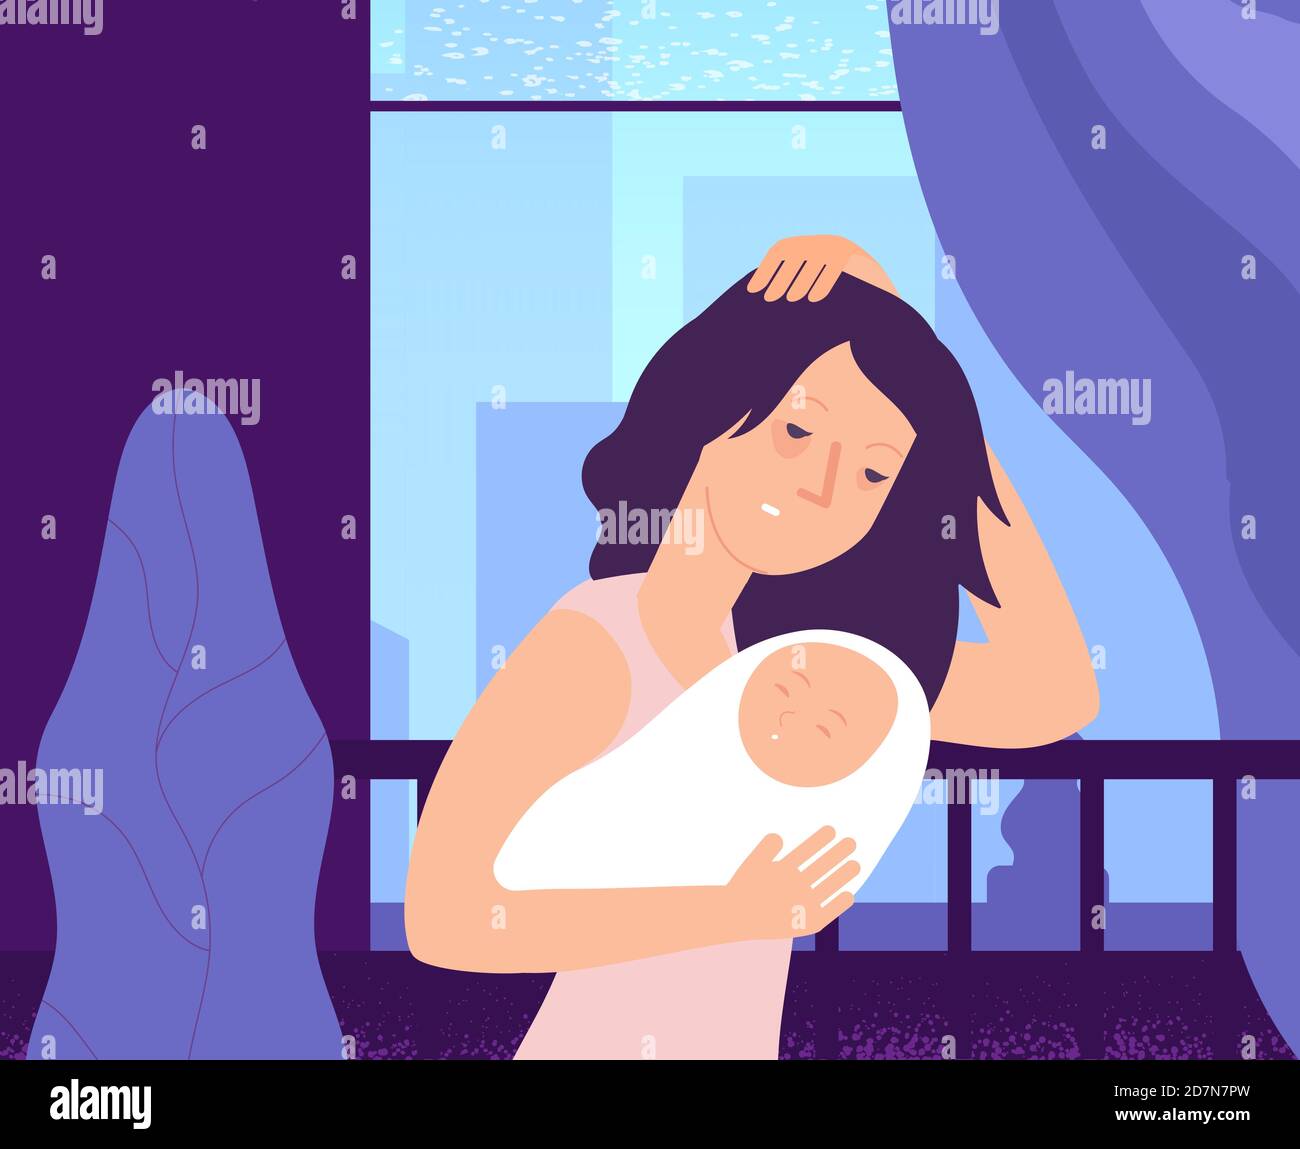 Femme dépressive et nouveau-né. Une jeune mère endormie, fatiguée, tient le bébé pleurant à la crèche, une femme dans l'humeur d'anxiété. Concept de vecteur de maternité. Illustration de la frustration de la maternité, période post-partum Illustration de Vecteur